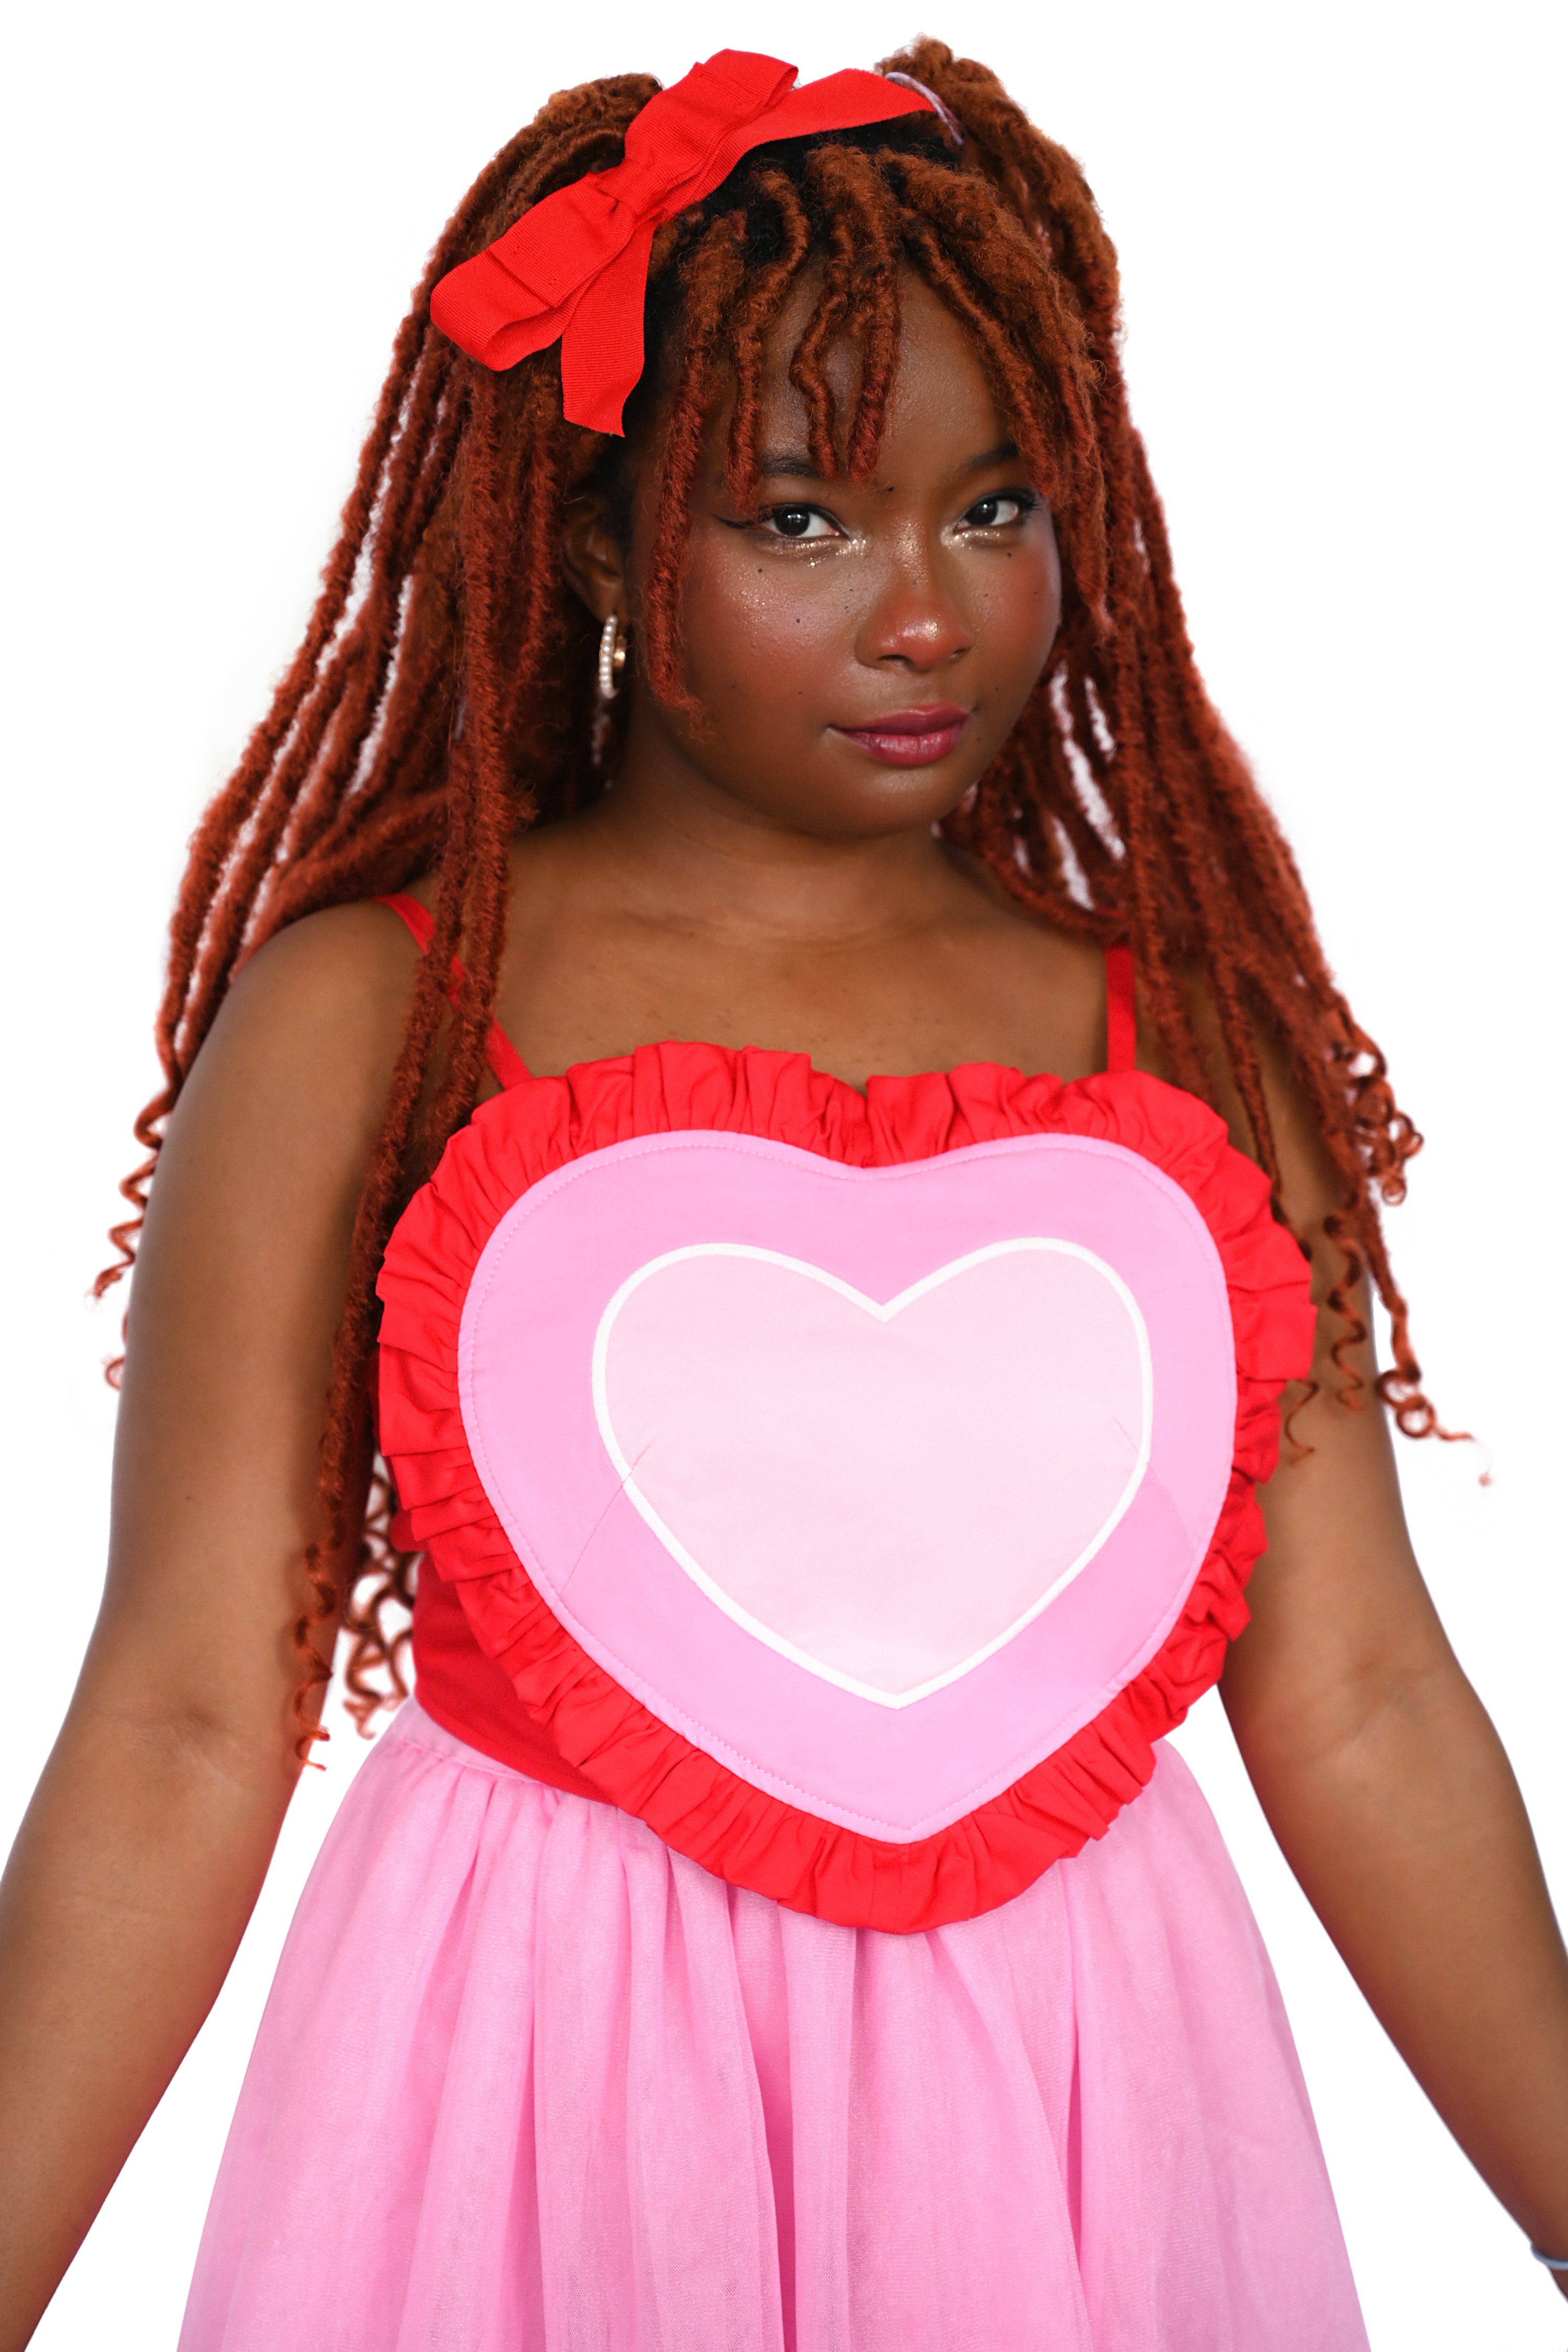 red heart top / heart-shaped top / corset top / crop top